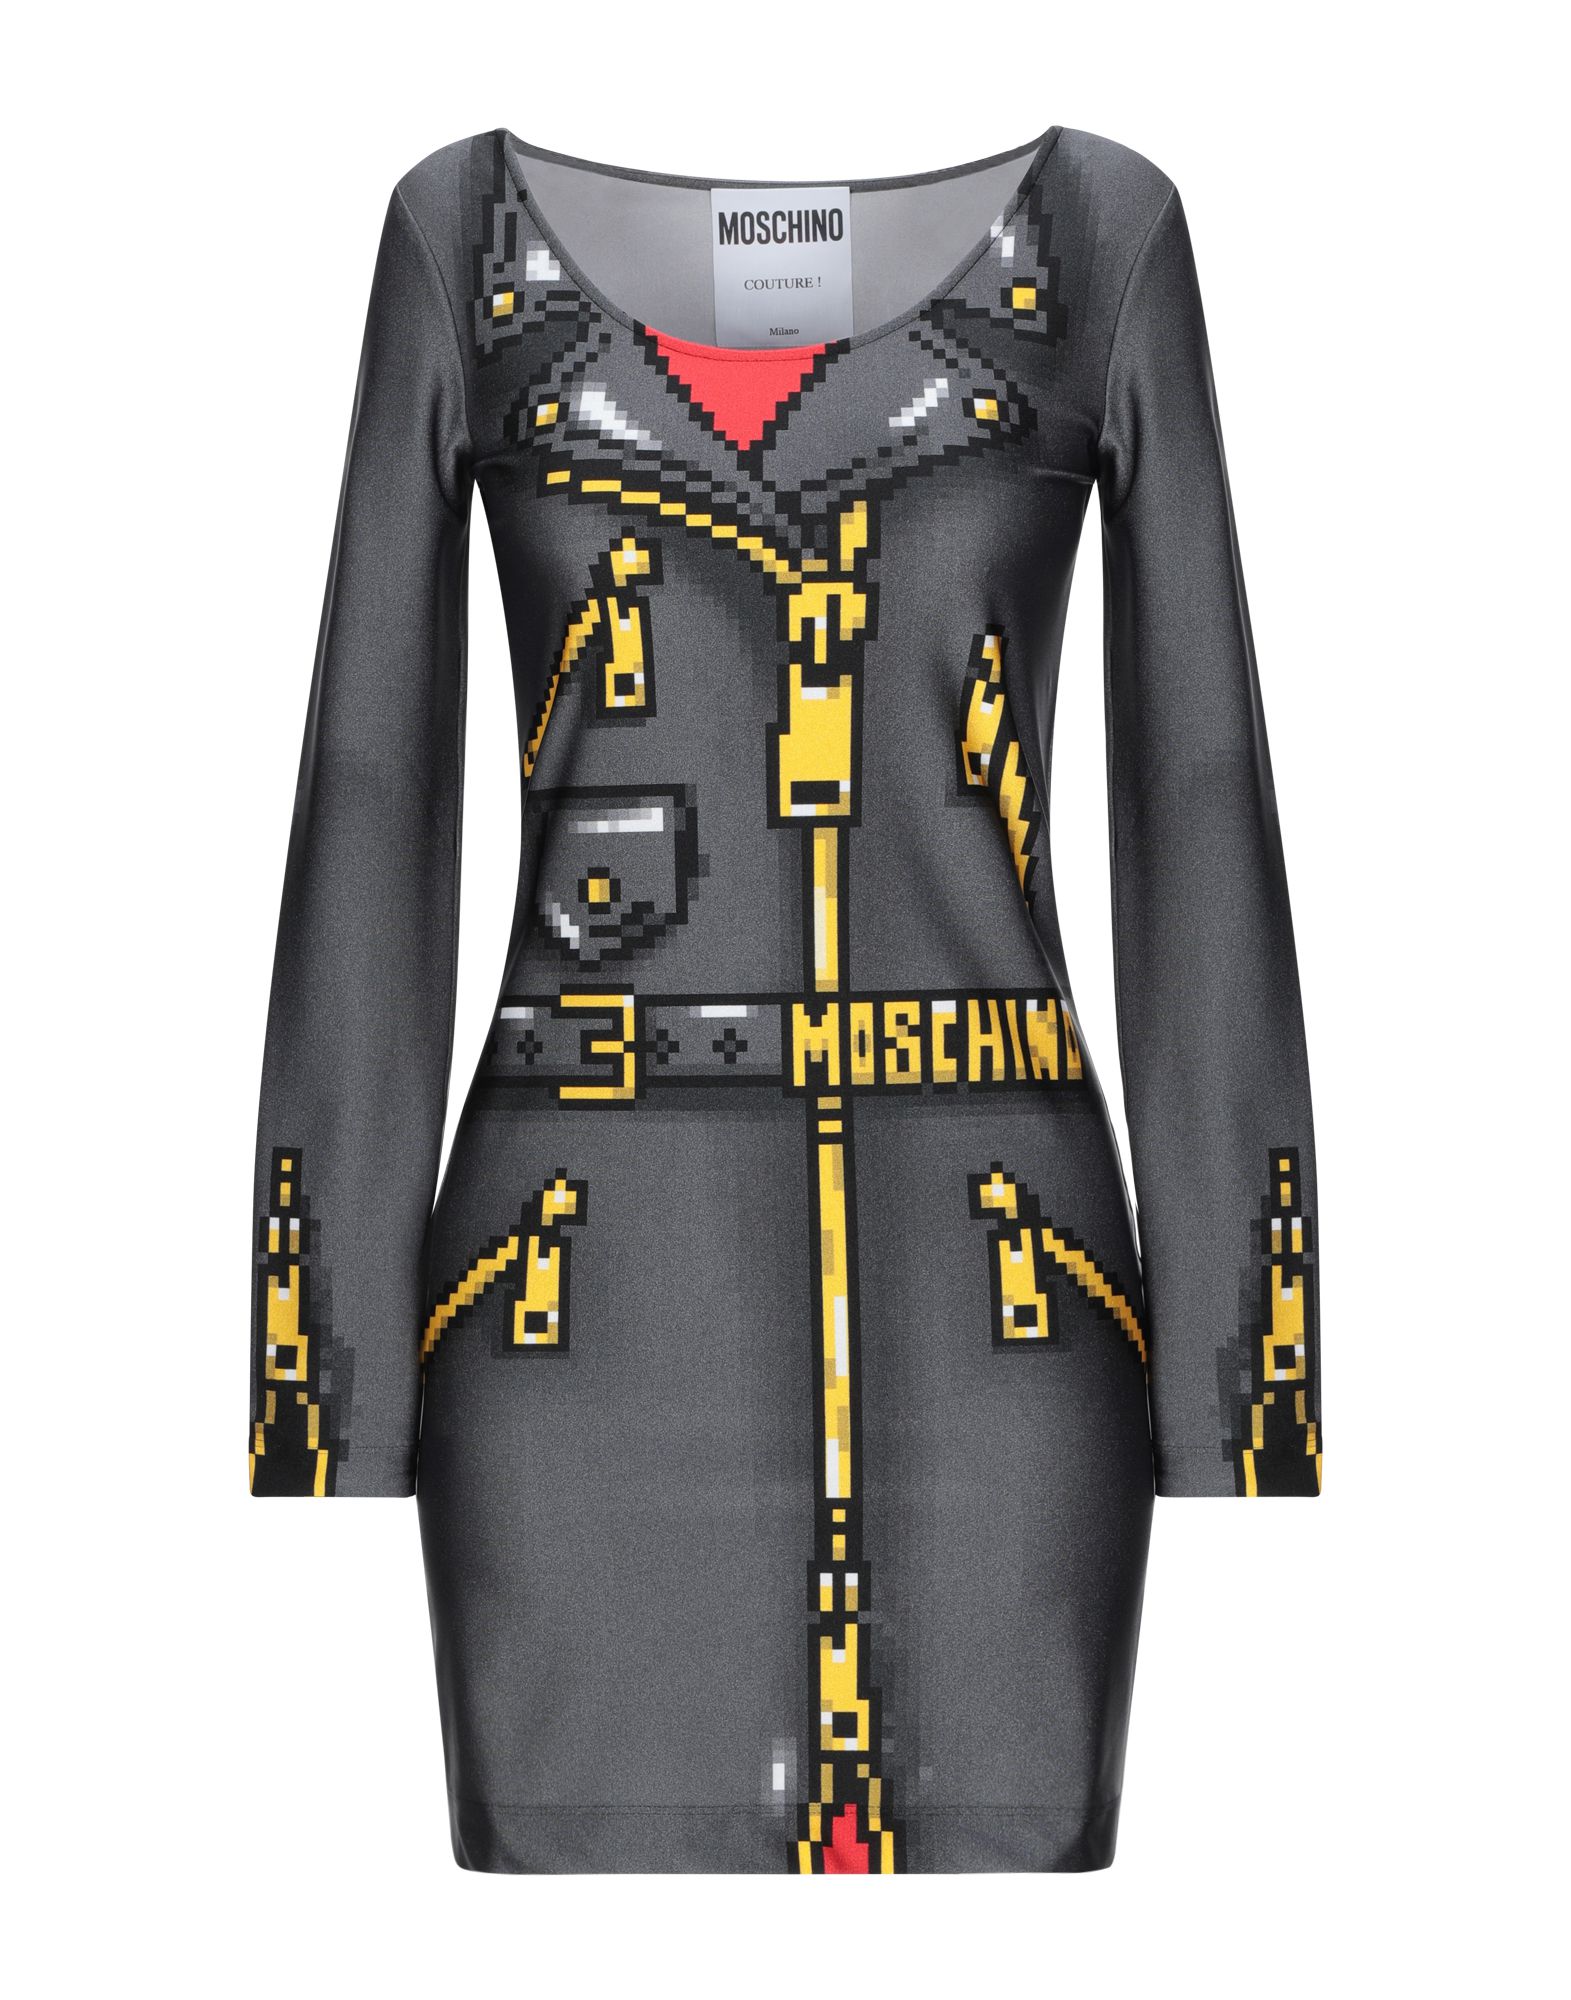 Москино одежда. Love Moschino 2021. Платье Москино. Платье халат Москино. Moschino одежда женская.